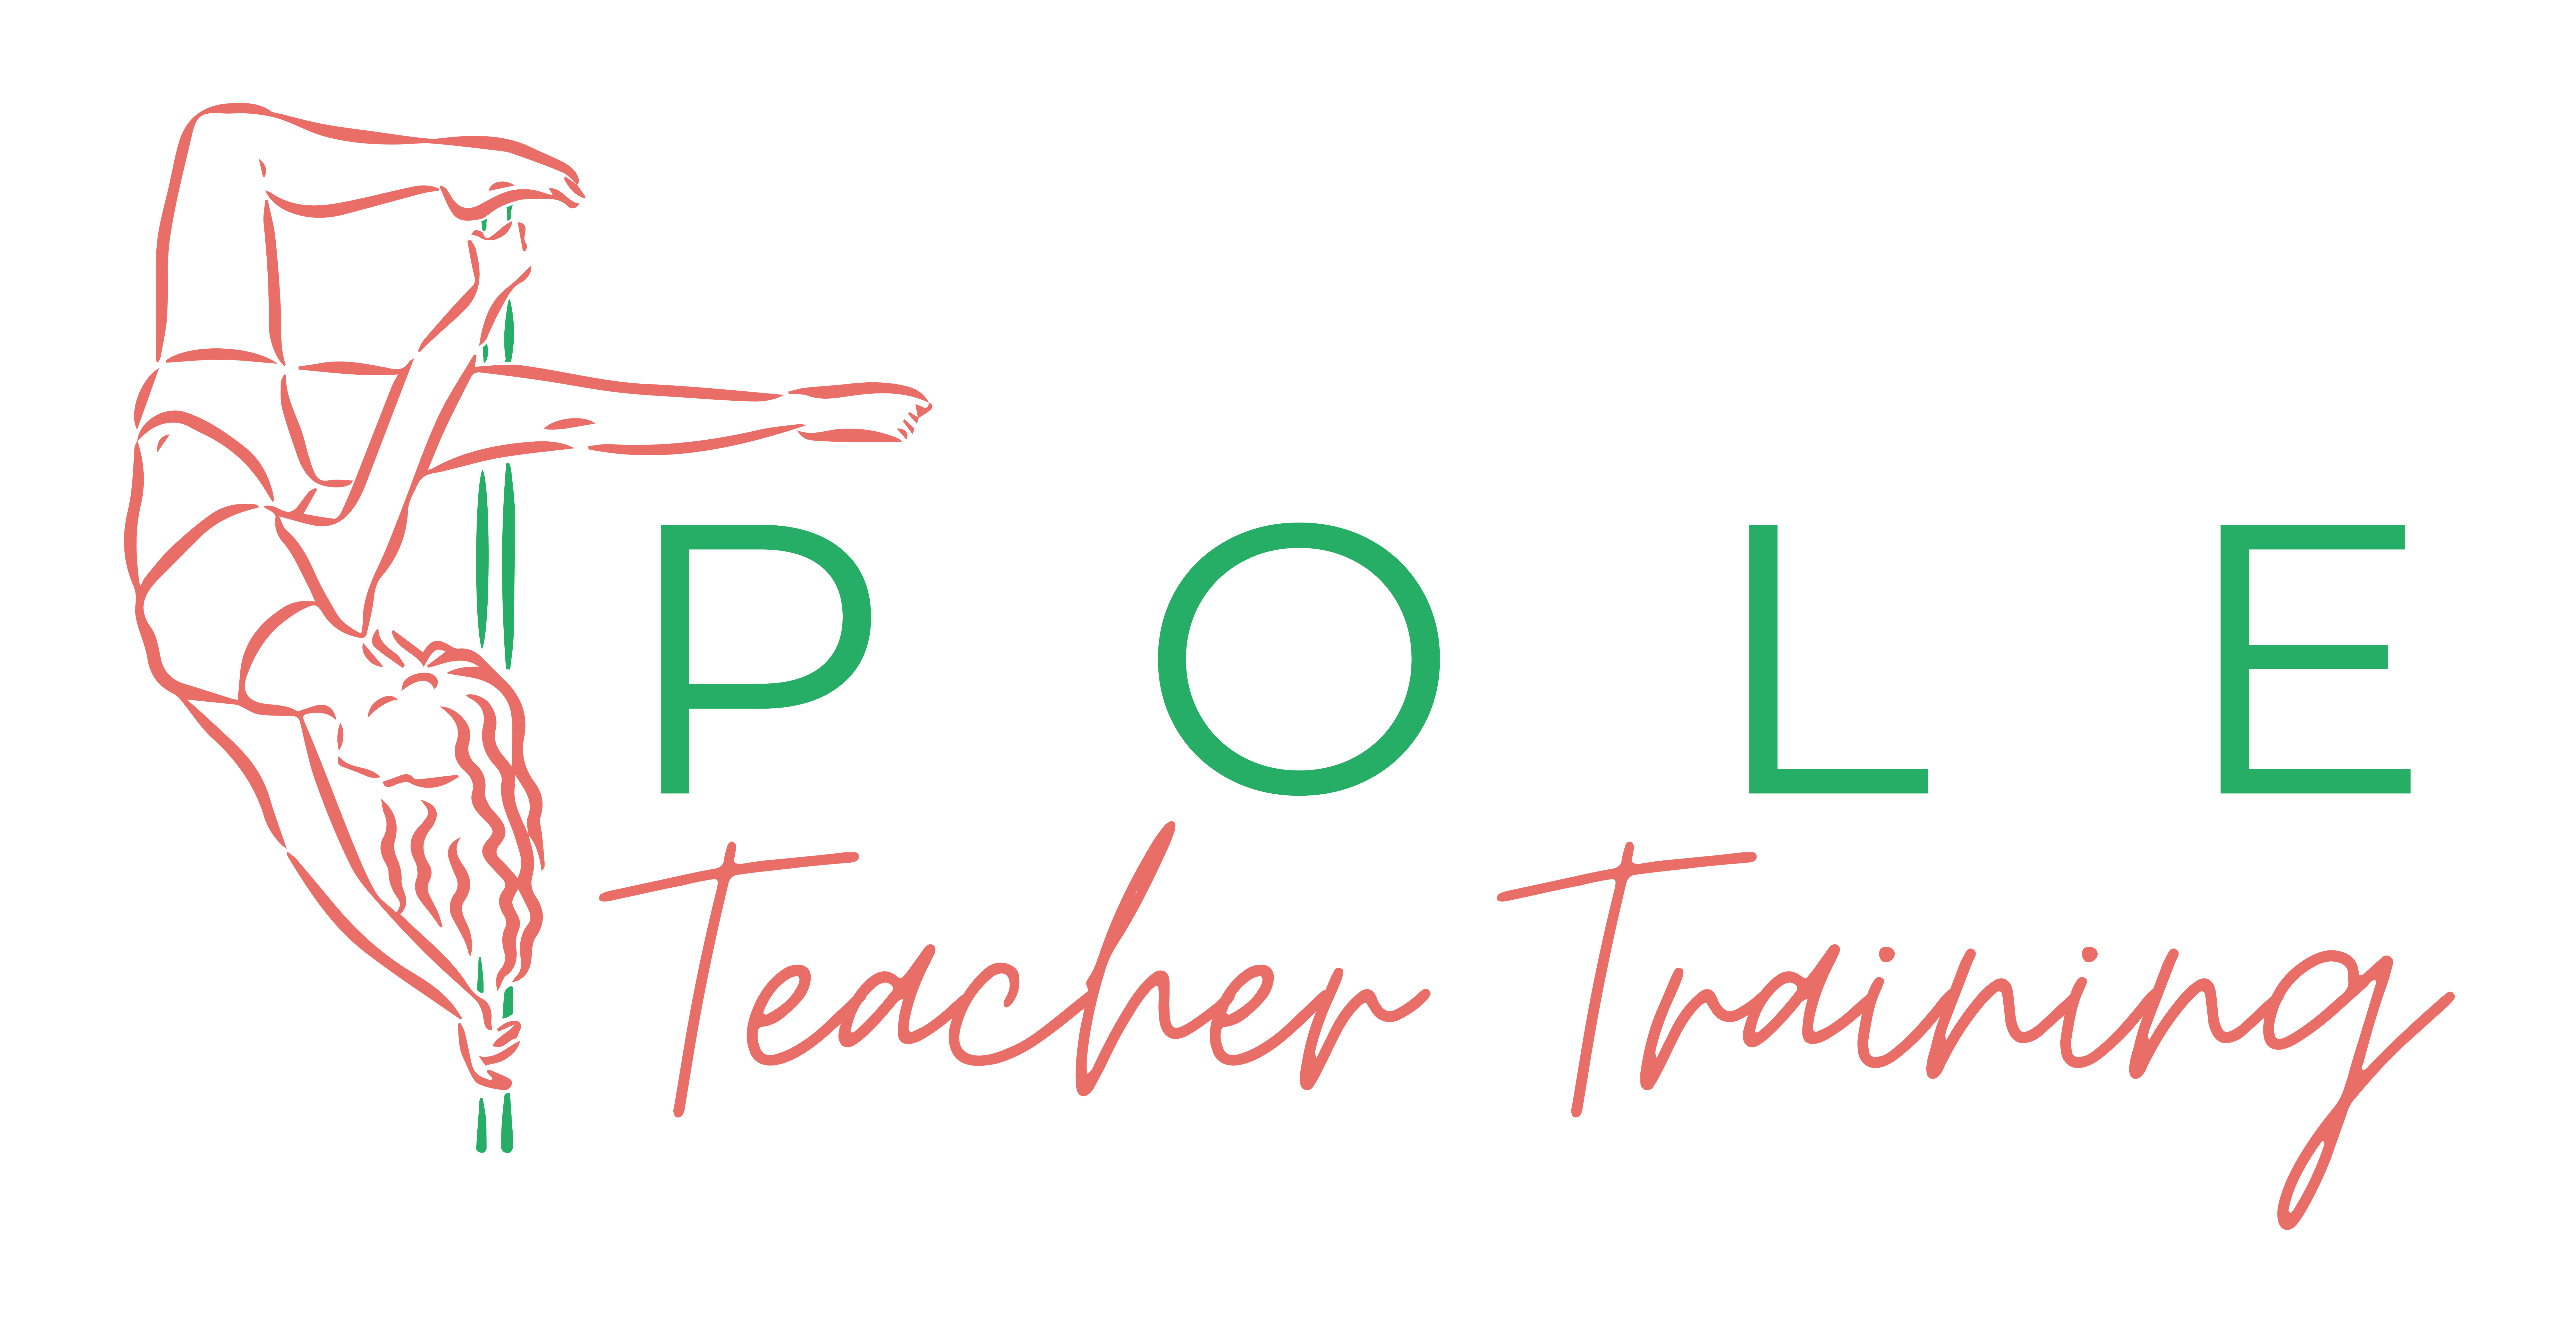 Logo: Pole Teacher Training